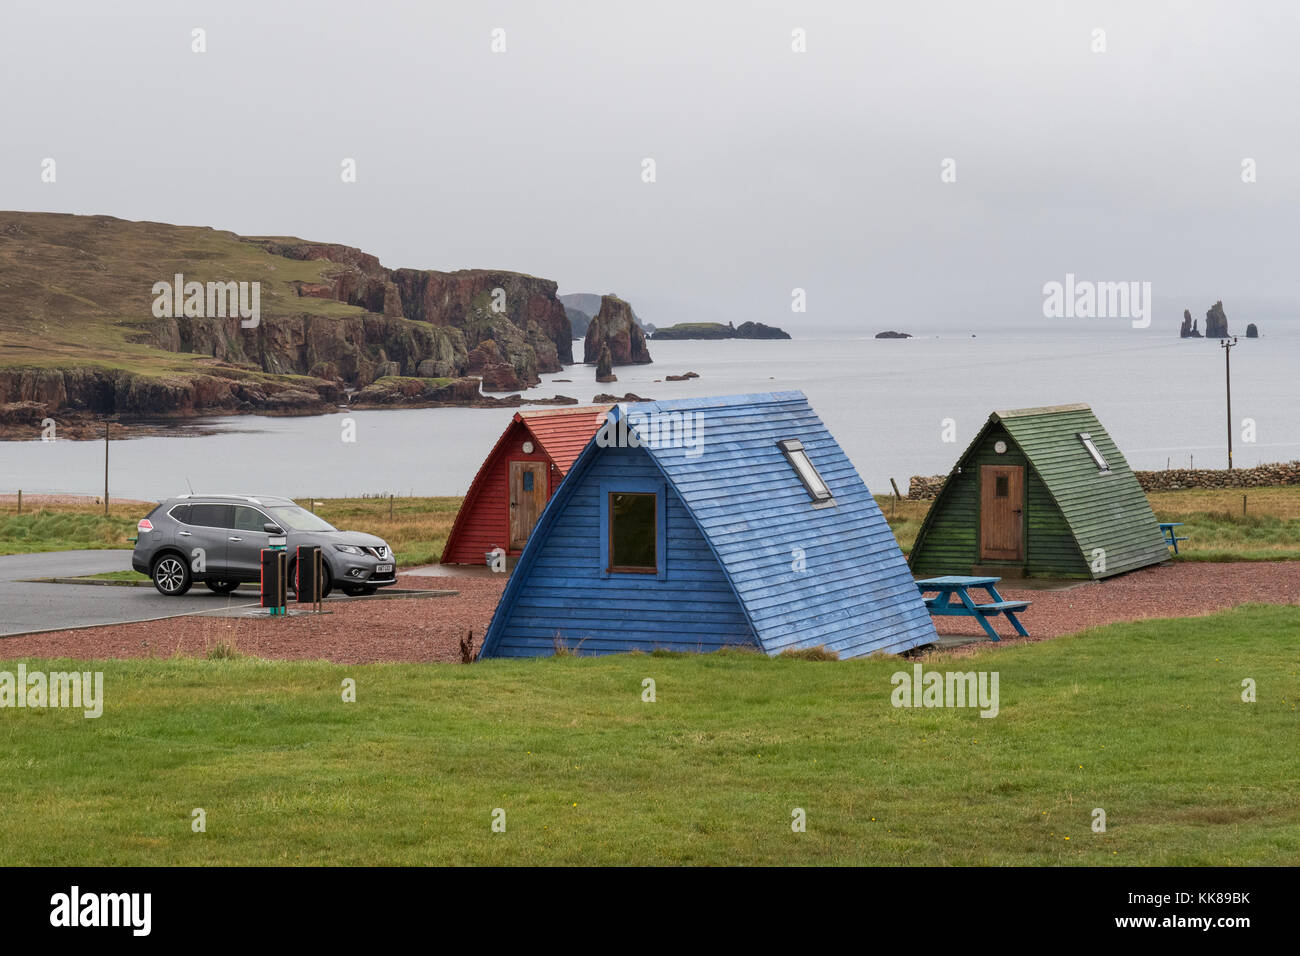 Les wigwams en bois surplombant la baie à Braewick Braewick cafe camping, Eshaness, Shetland, Écosse Banque D'Images